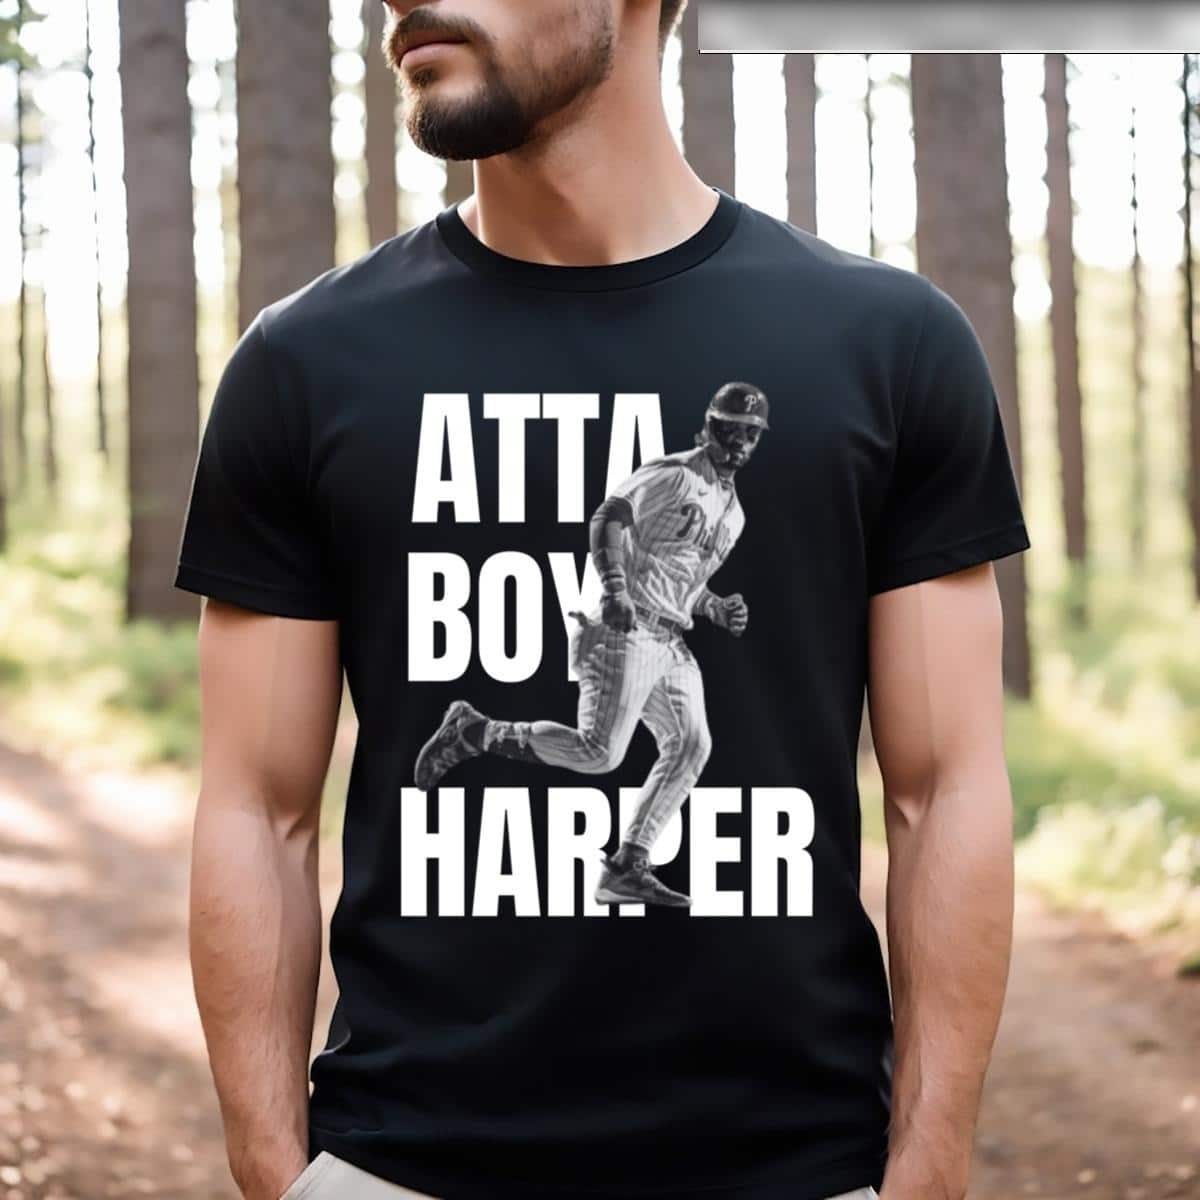 Atta Boy Harper T-Shirt Gift For Friends